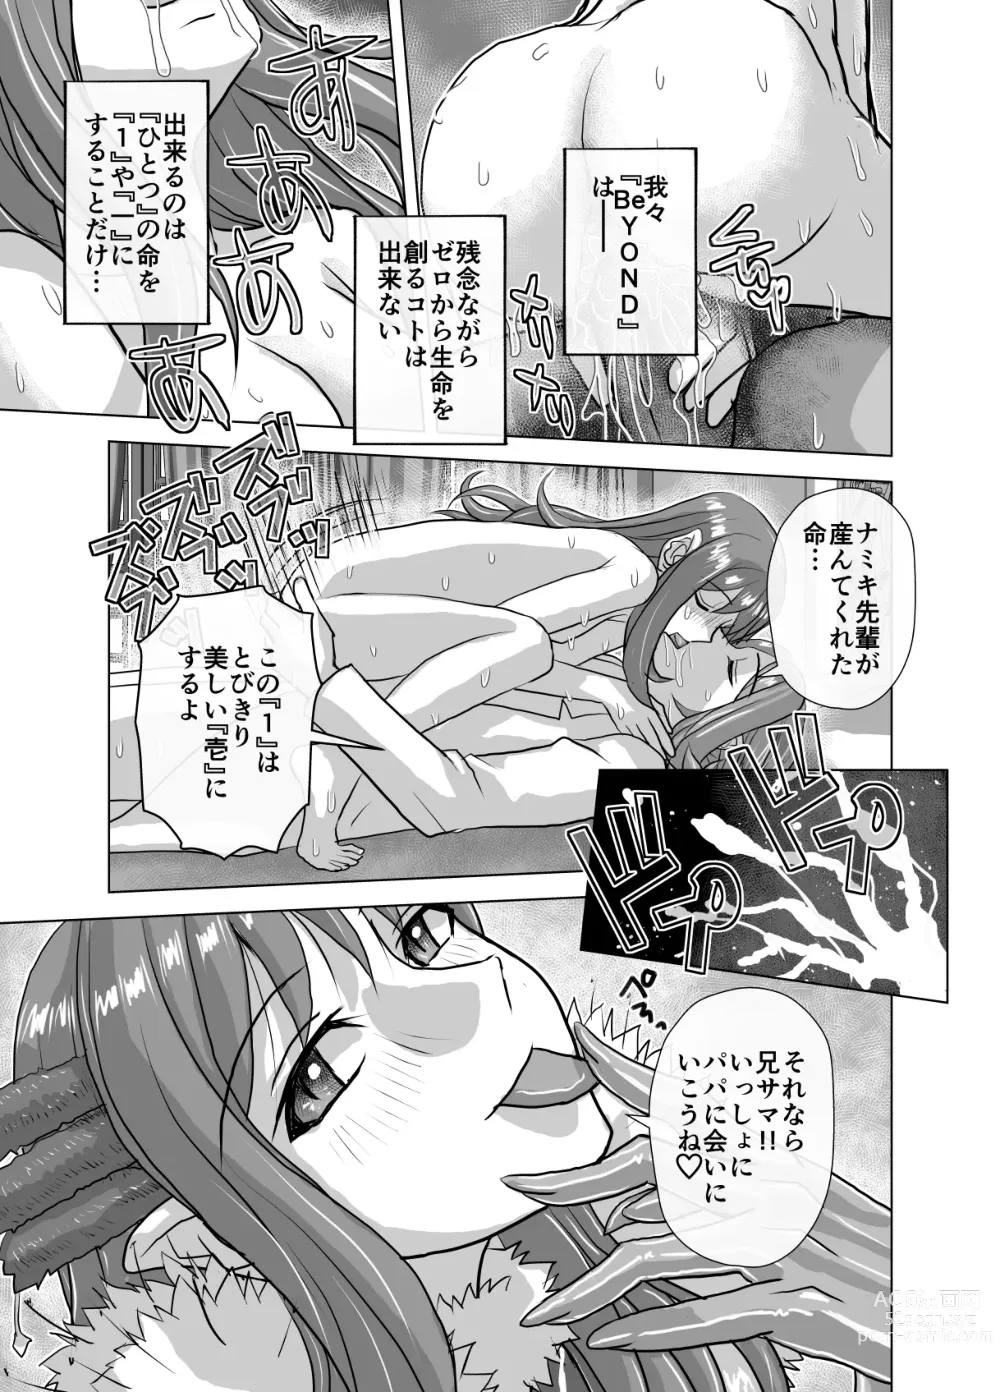 Page 605 of doujinshi BEYOND ~ Aisubeki Kanata no Hitobito 1~10